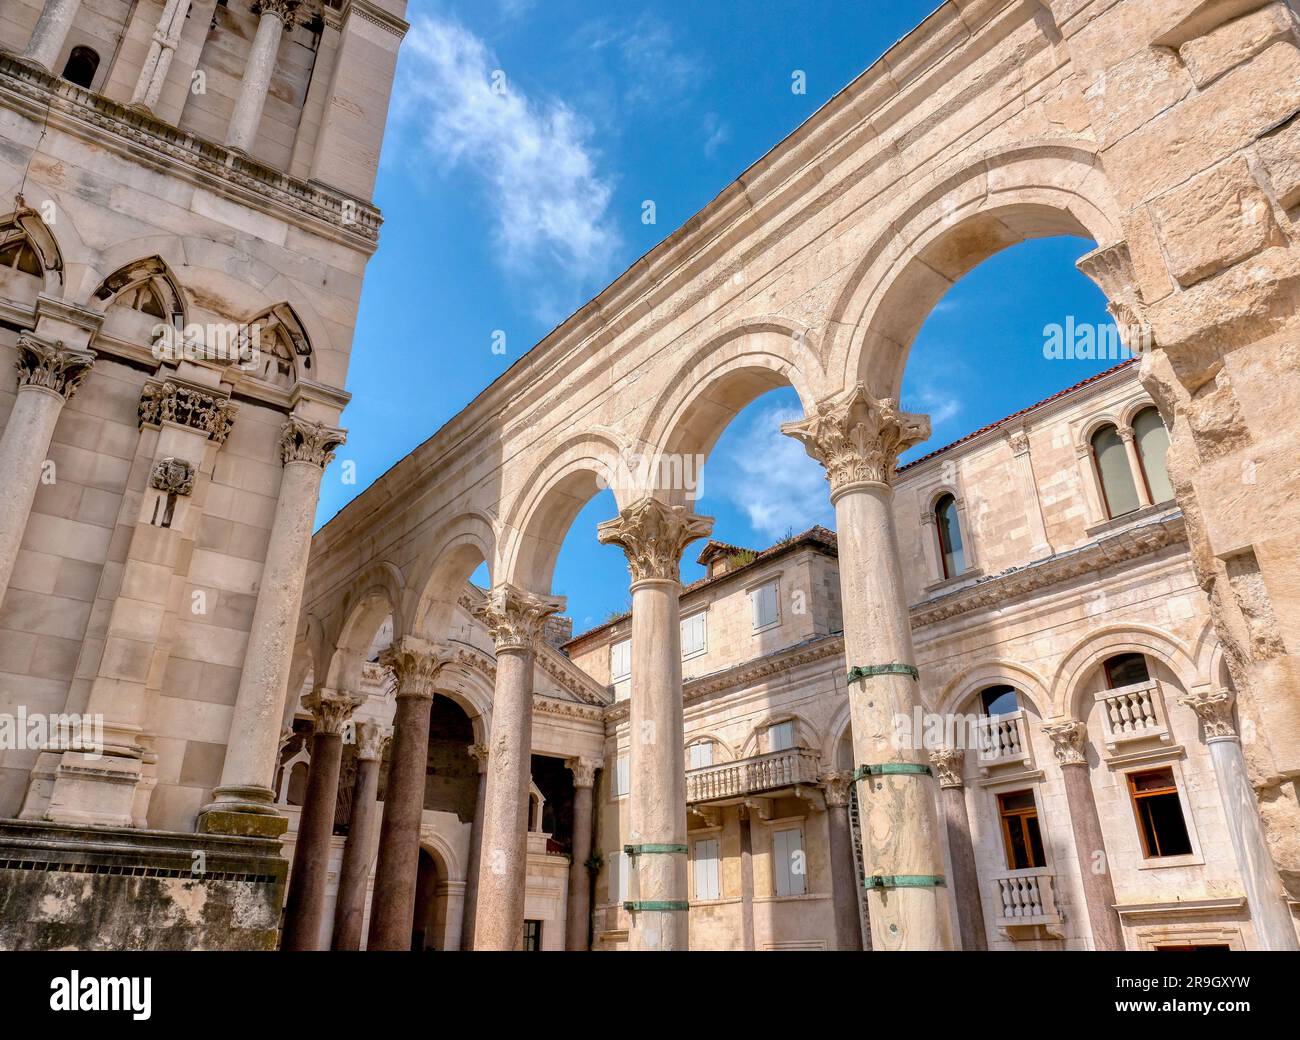 Les anciennes colonnes romaines et les arches de la cour centrale, appelée le Peristyle, dans le palais de Dioclétien, situé dans la vieille ville de Split, en Croatie Banque D'Images